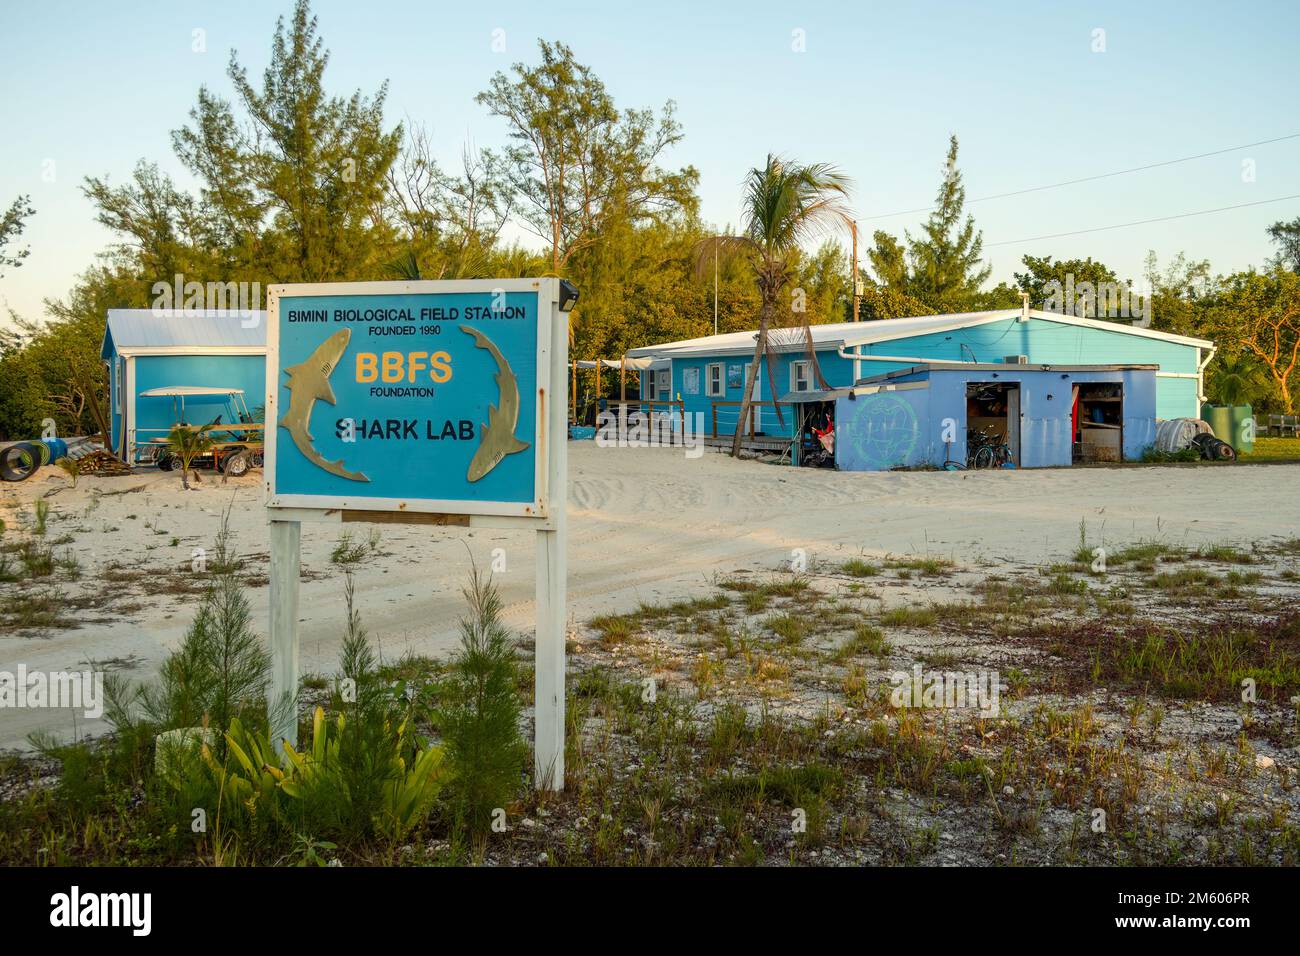 L'installation de recherche de requins de la station de terrain biologique Bimini, au sud de la Bimini, aux Bahamas Banque D'Images